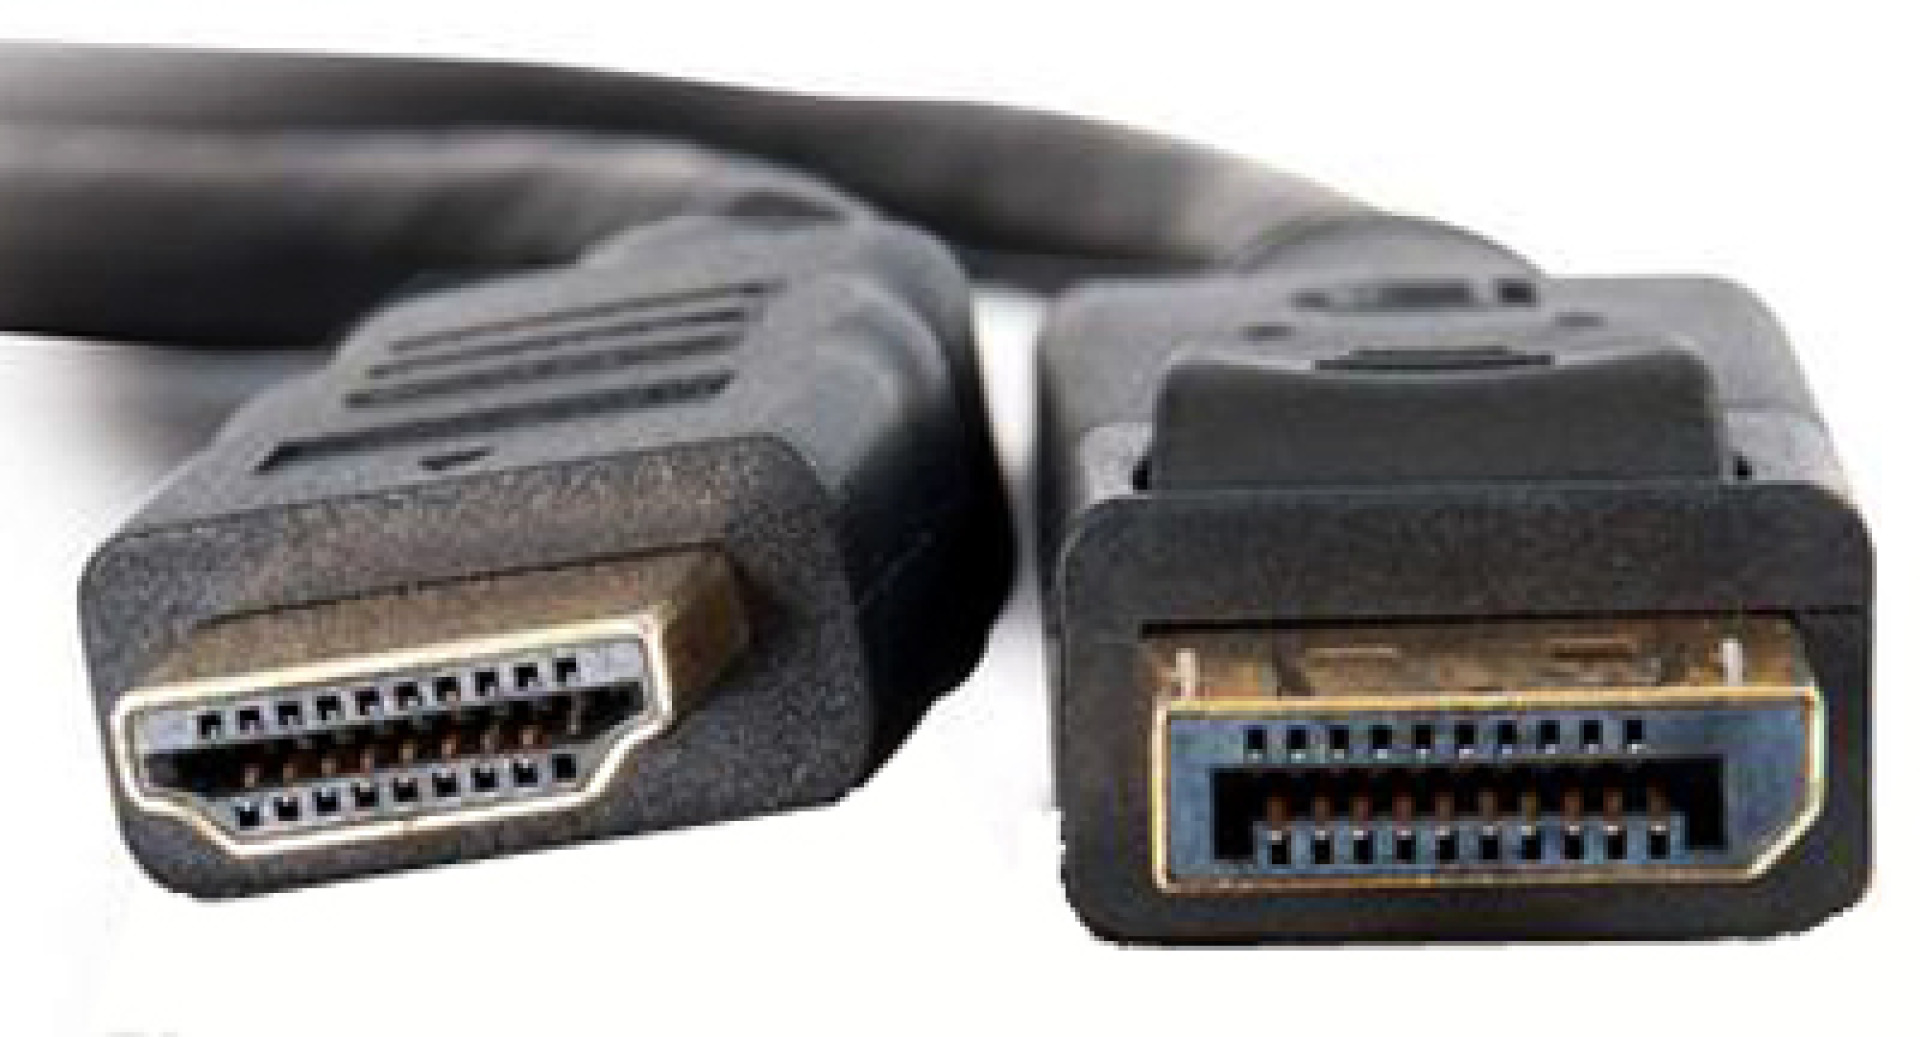 Konverter DisplayPort 1.2 auf HDMI, Stecker/Stecker, schwarz, 2 m